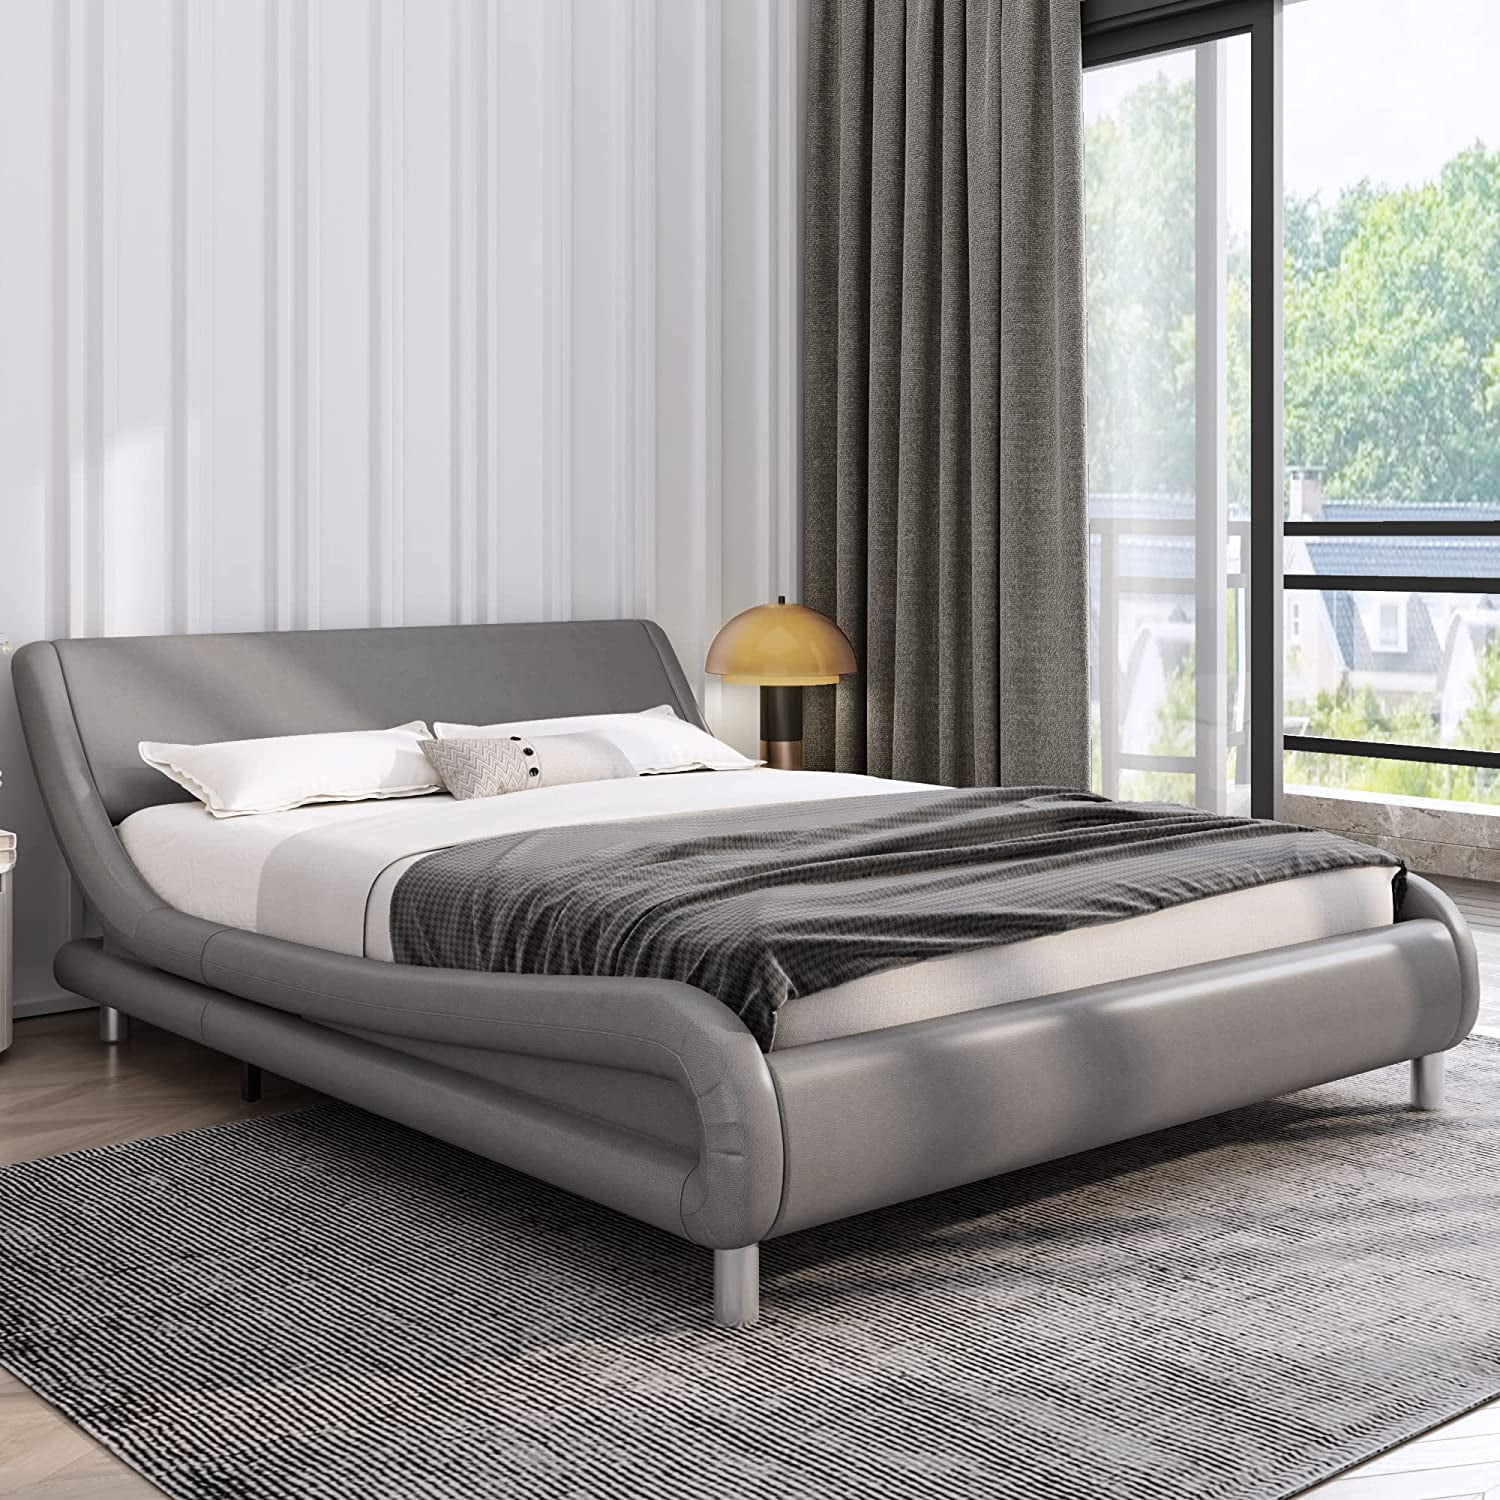 Modern Bedroom Wooden Platform Bed Frame with Wooden Slats 3 Size Gray Furniture 